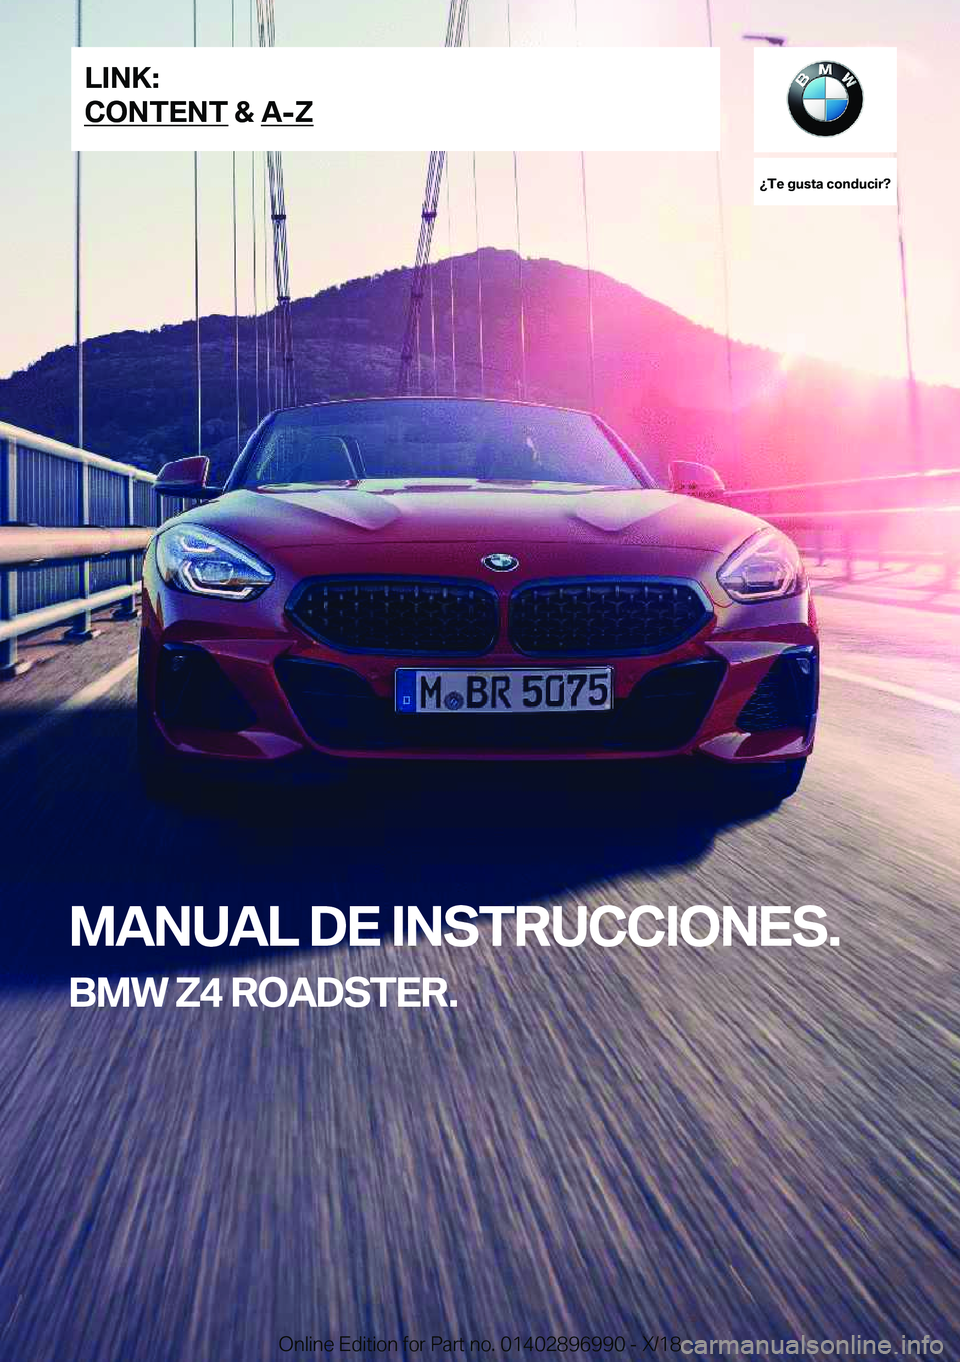 BMW Z4 2019  Manuales de Empleo (in Spanish) ��T�e��g�u�s�t�a��c�o�n�d�u�c�i�r� 
�M�A�N�U�A�L��D�E��I�N�S�T�R�U�C�C�I�O�N�E�S�.
�B�M�W��Z�4��R�O�A�D�S�T�E�R�.�L�I�N�K�:
�C�O�N�T�E�N�T��&��A�-�Z�O�n�l�i�n�e��E�d�i�t�i�o�n��f�o�r��P�a�